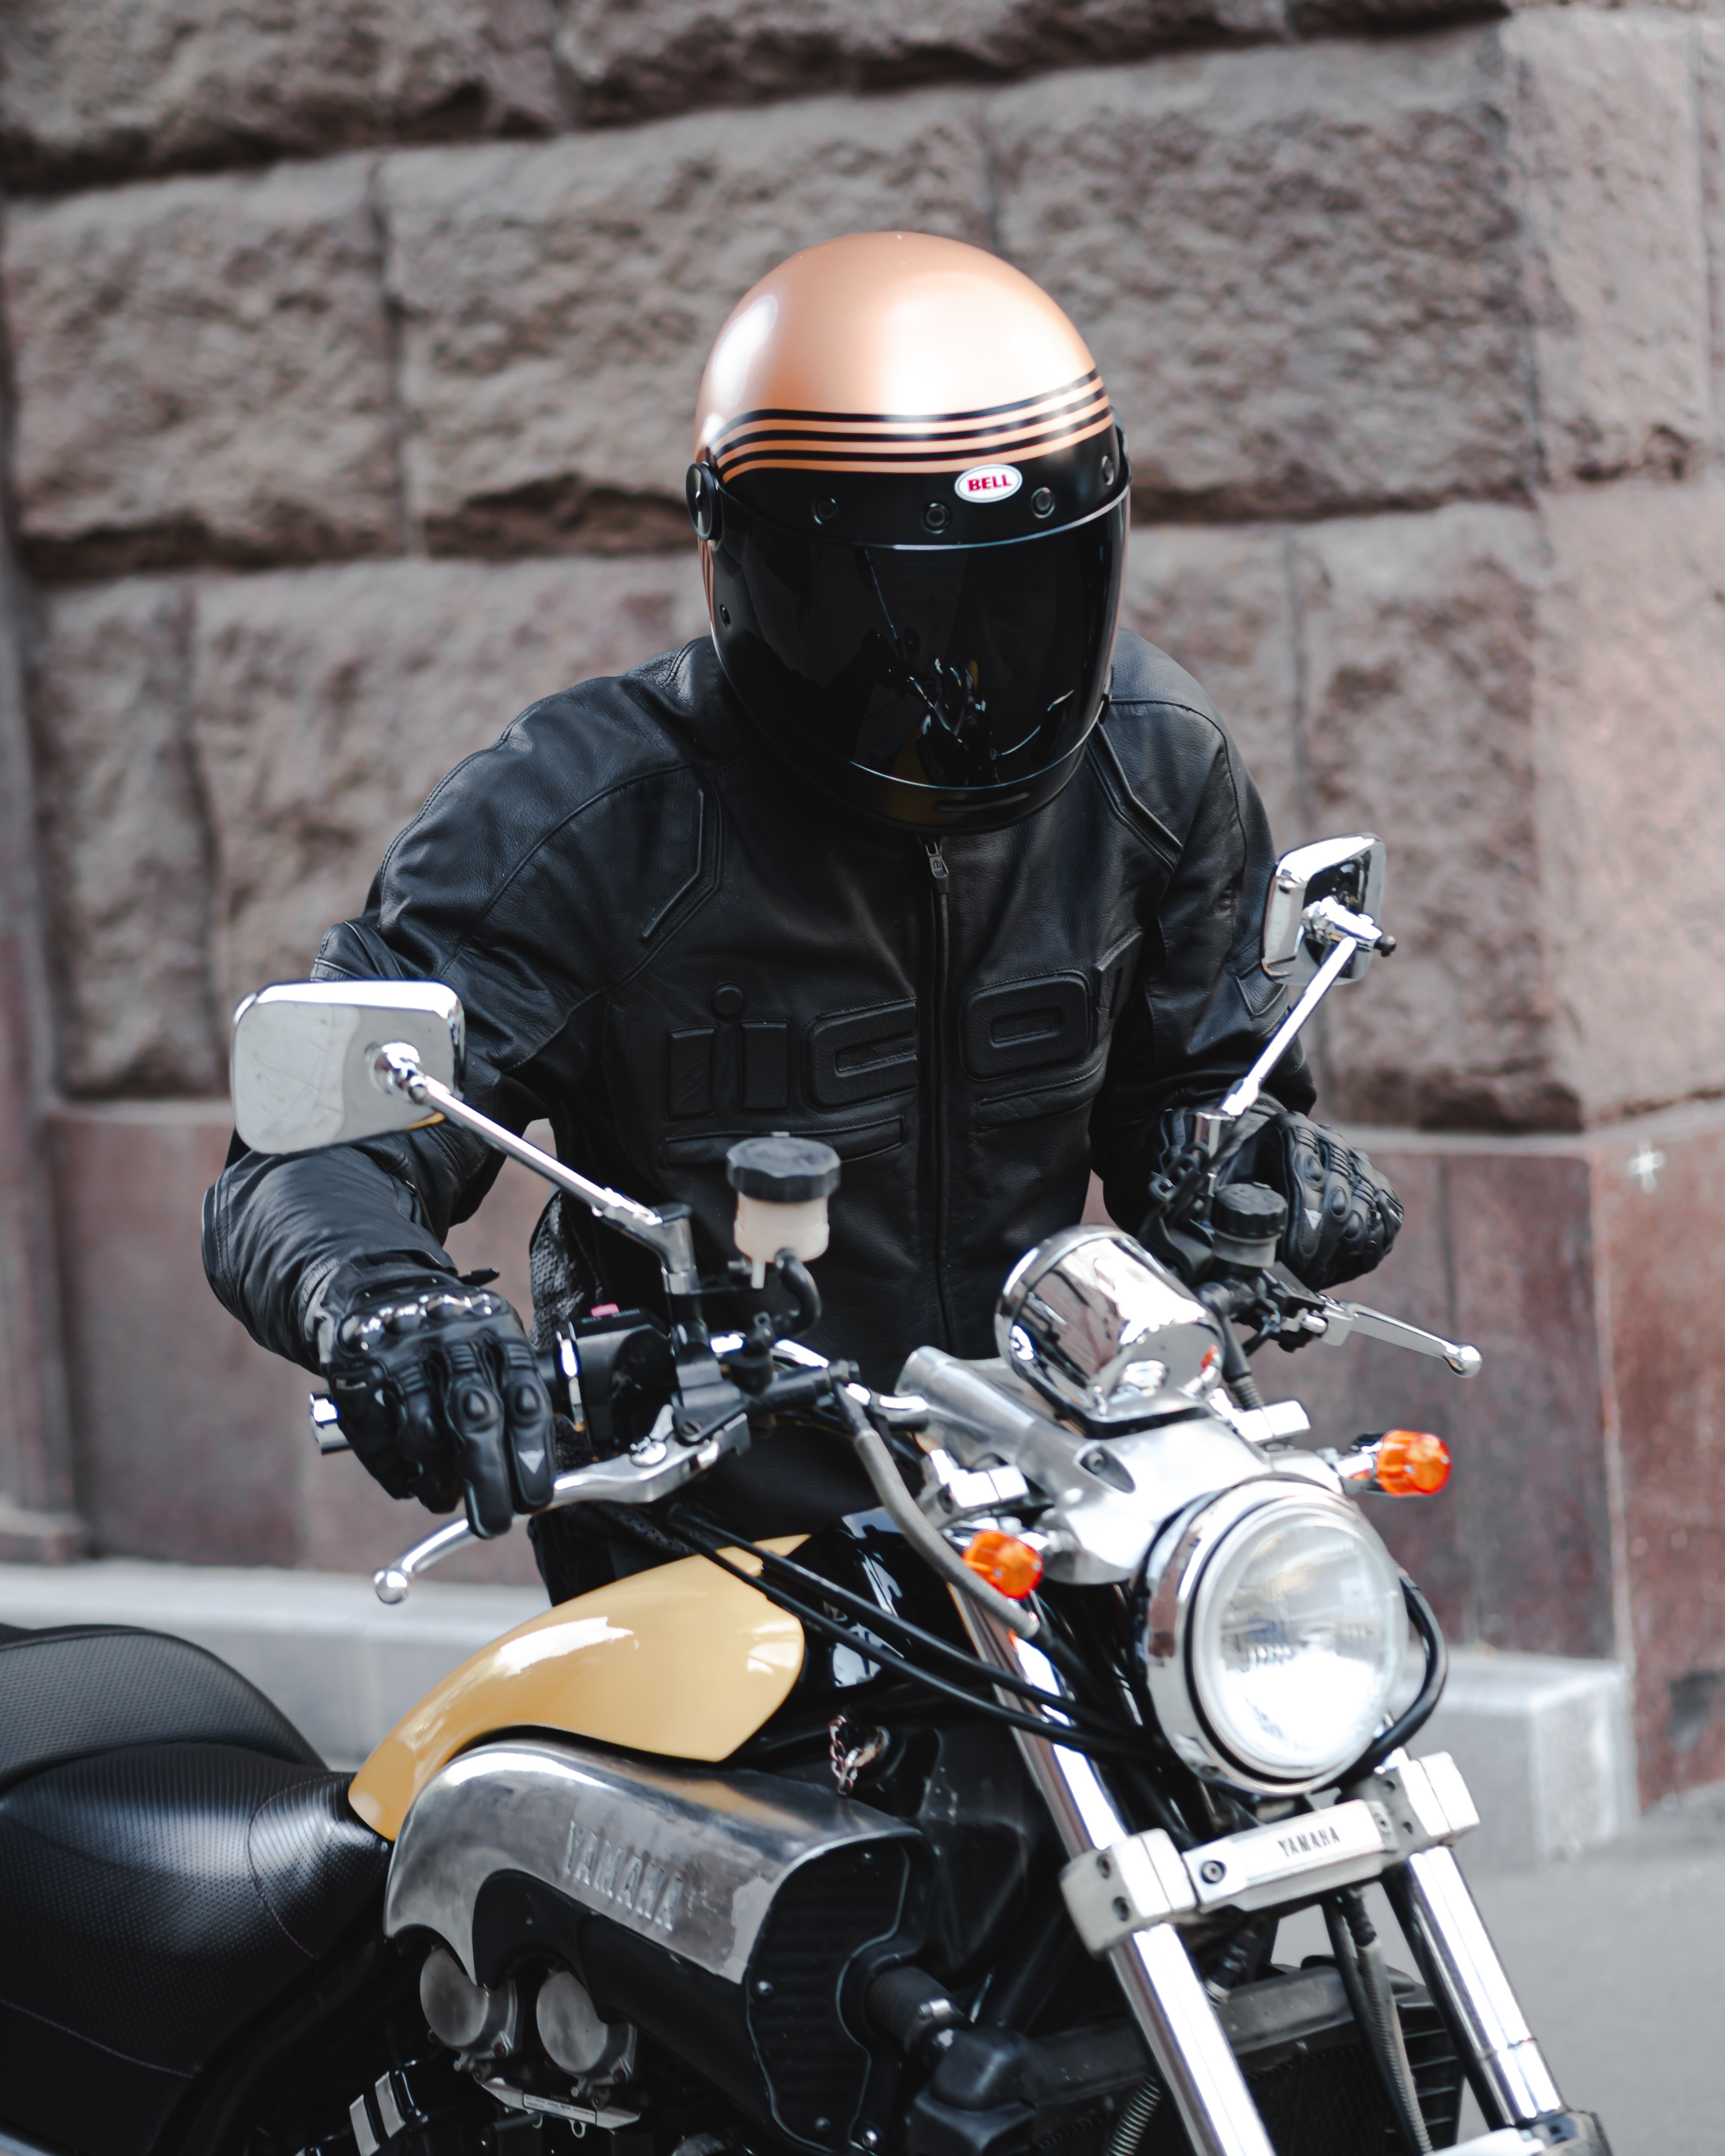 Free download wallpaper Helmet, Biker, Motorcycle, Motorcycles, Motorcyclist, Bike on your PC desktop